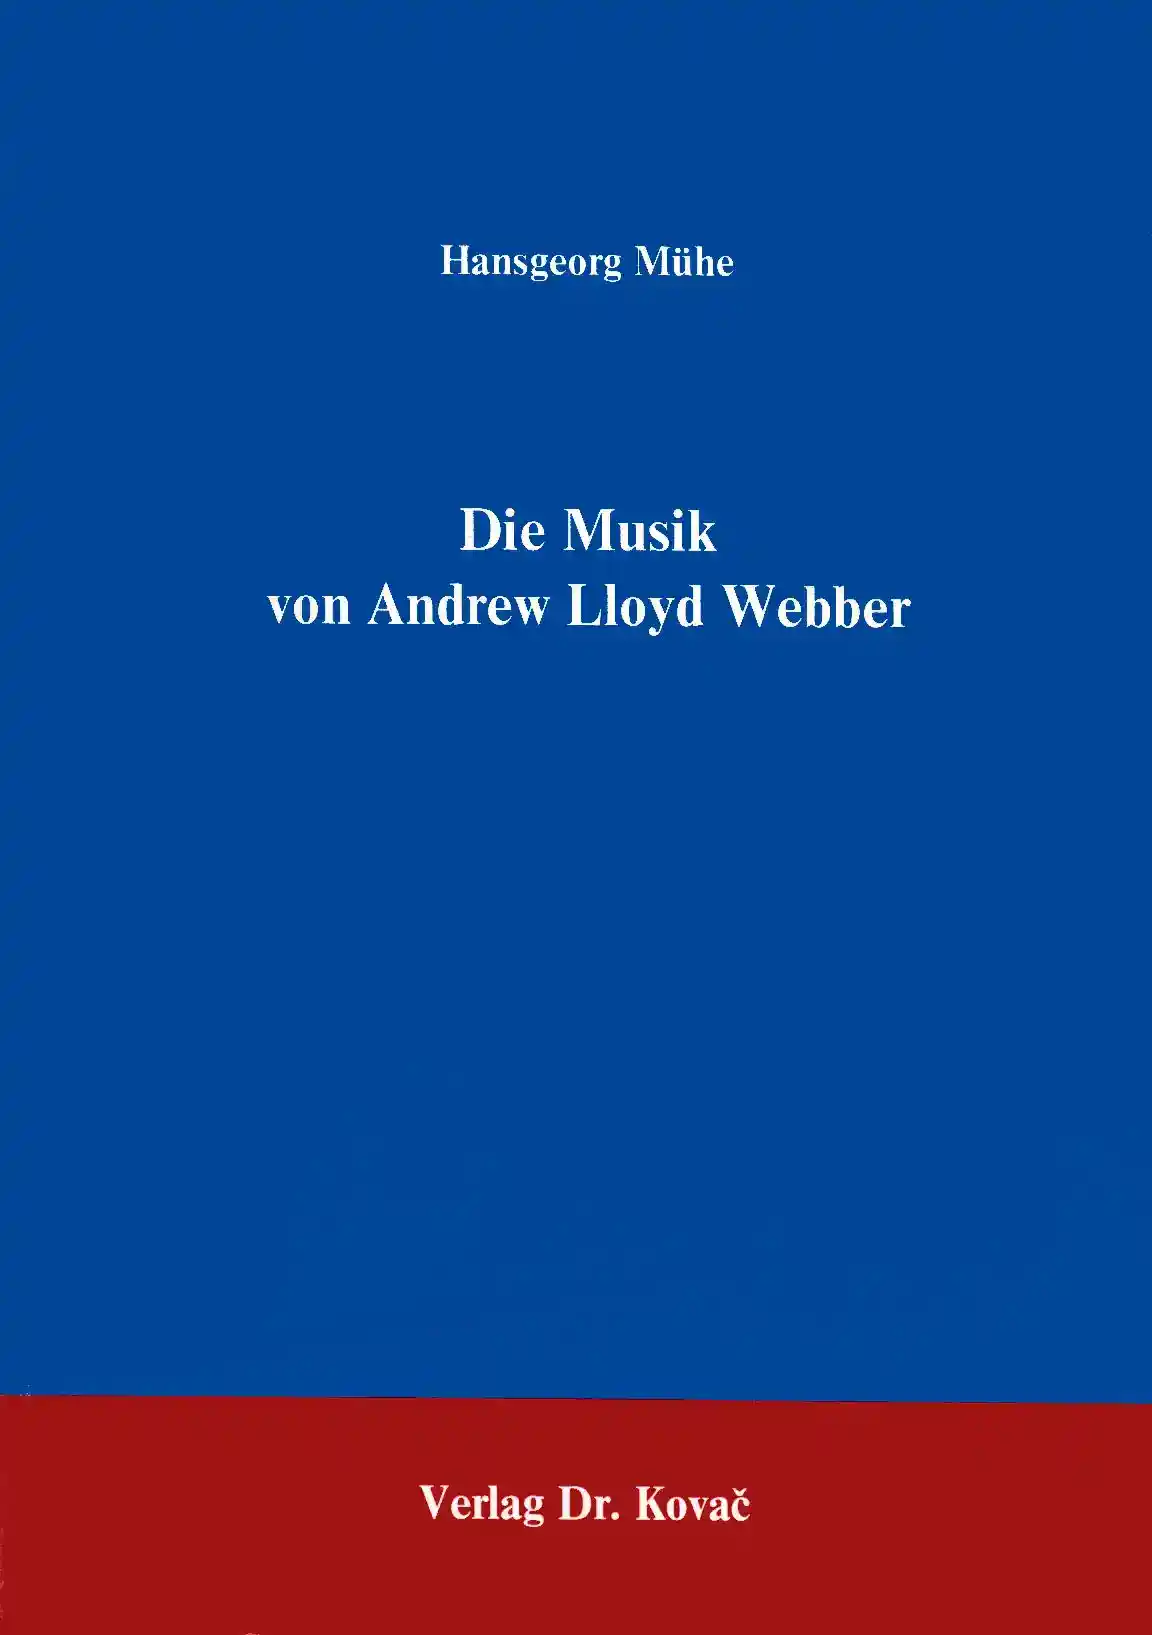 : Die Musik von Andrew Lloyd Webber, 2. Aufl.